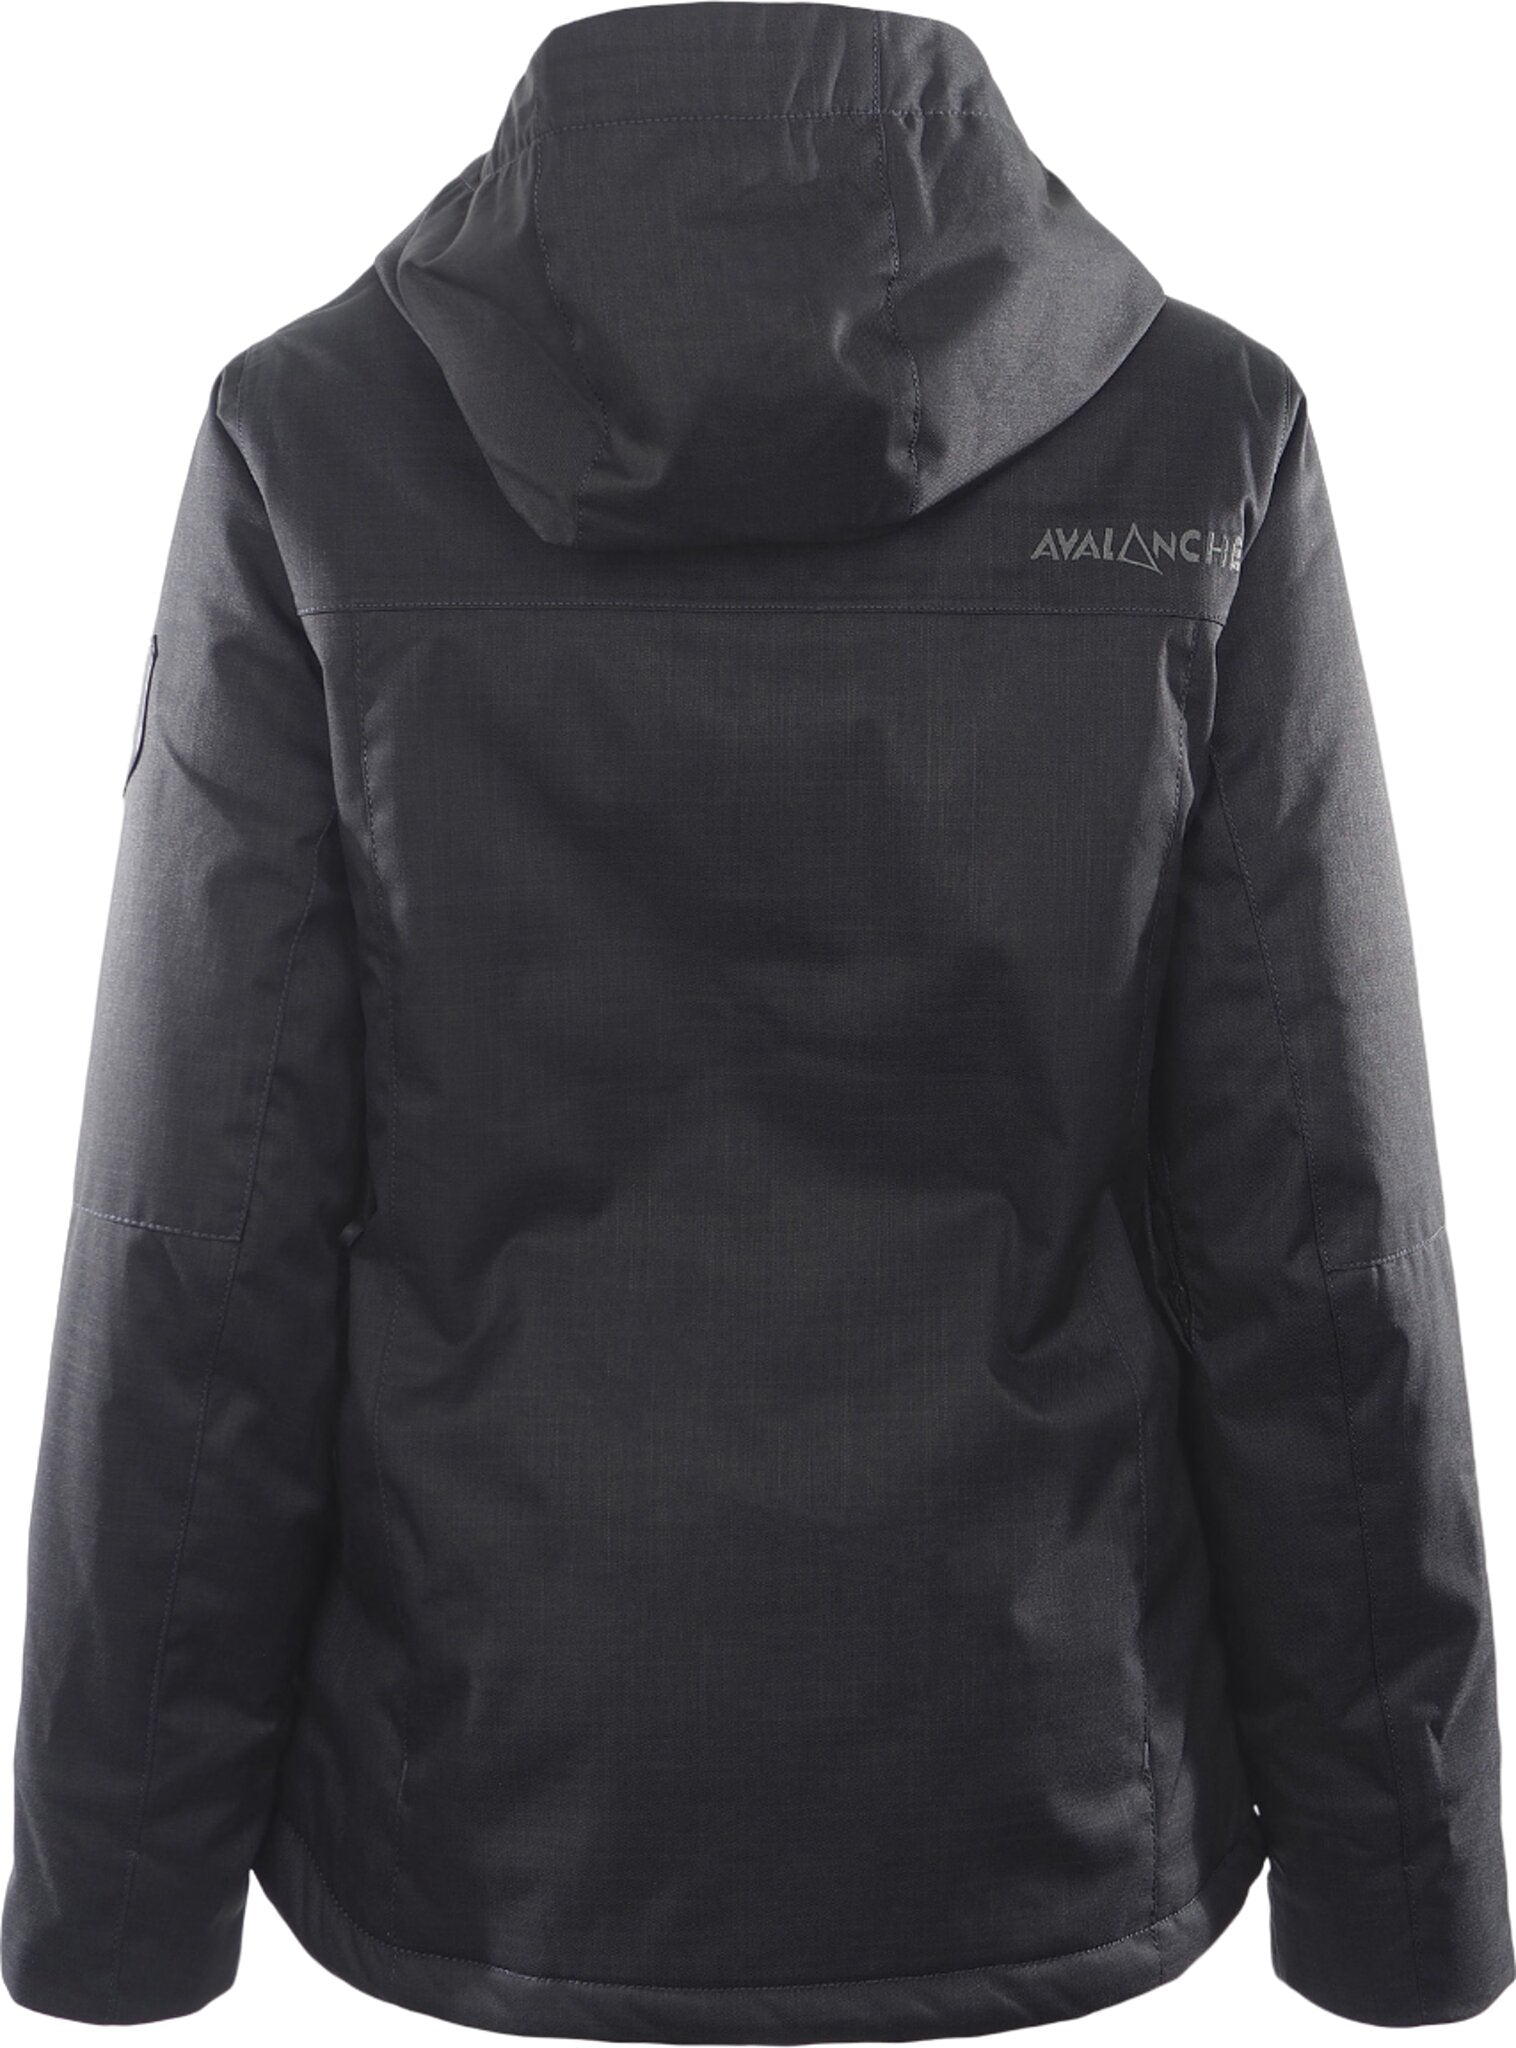 Avalanche, Jackets & Coats, Avalanche Outdoor Supply Company Sweater